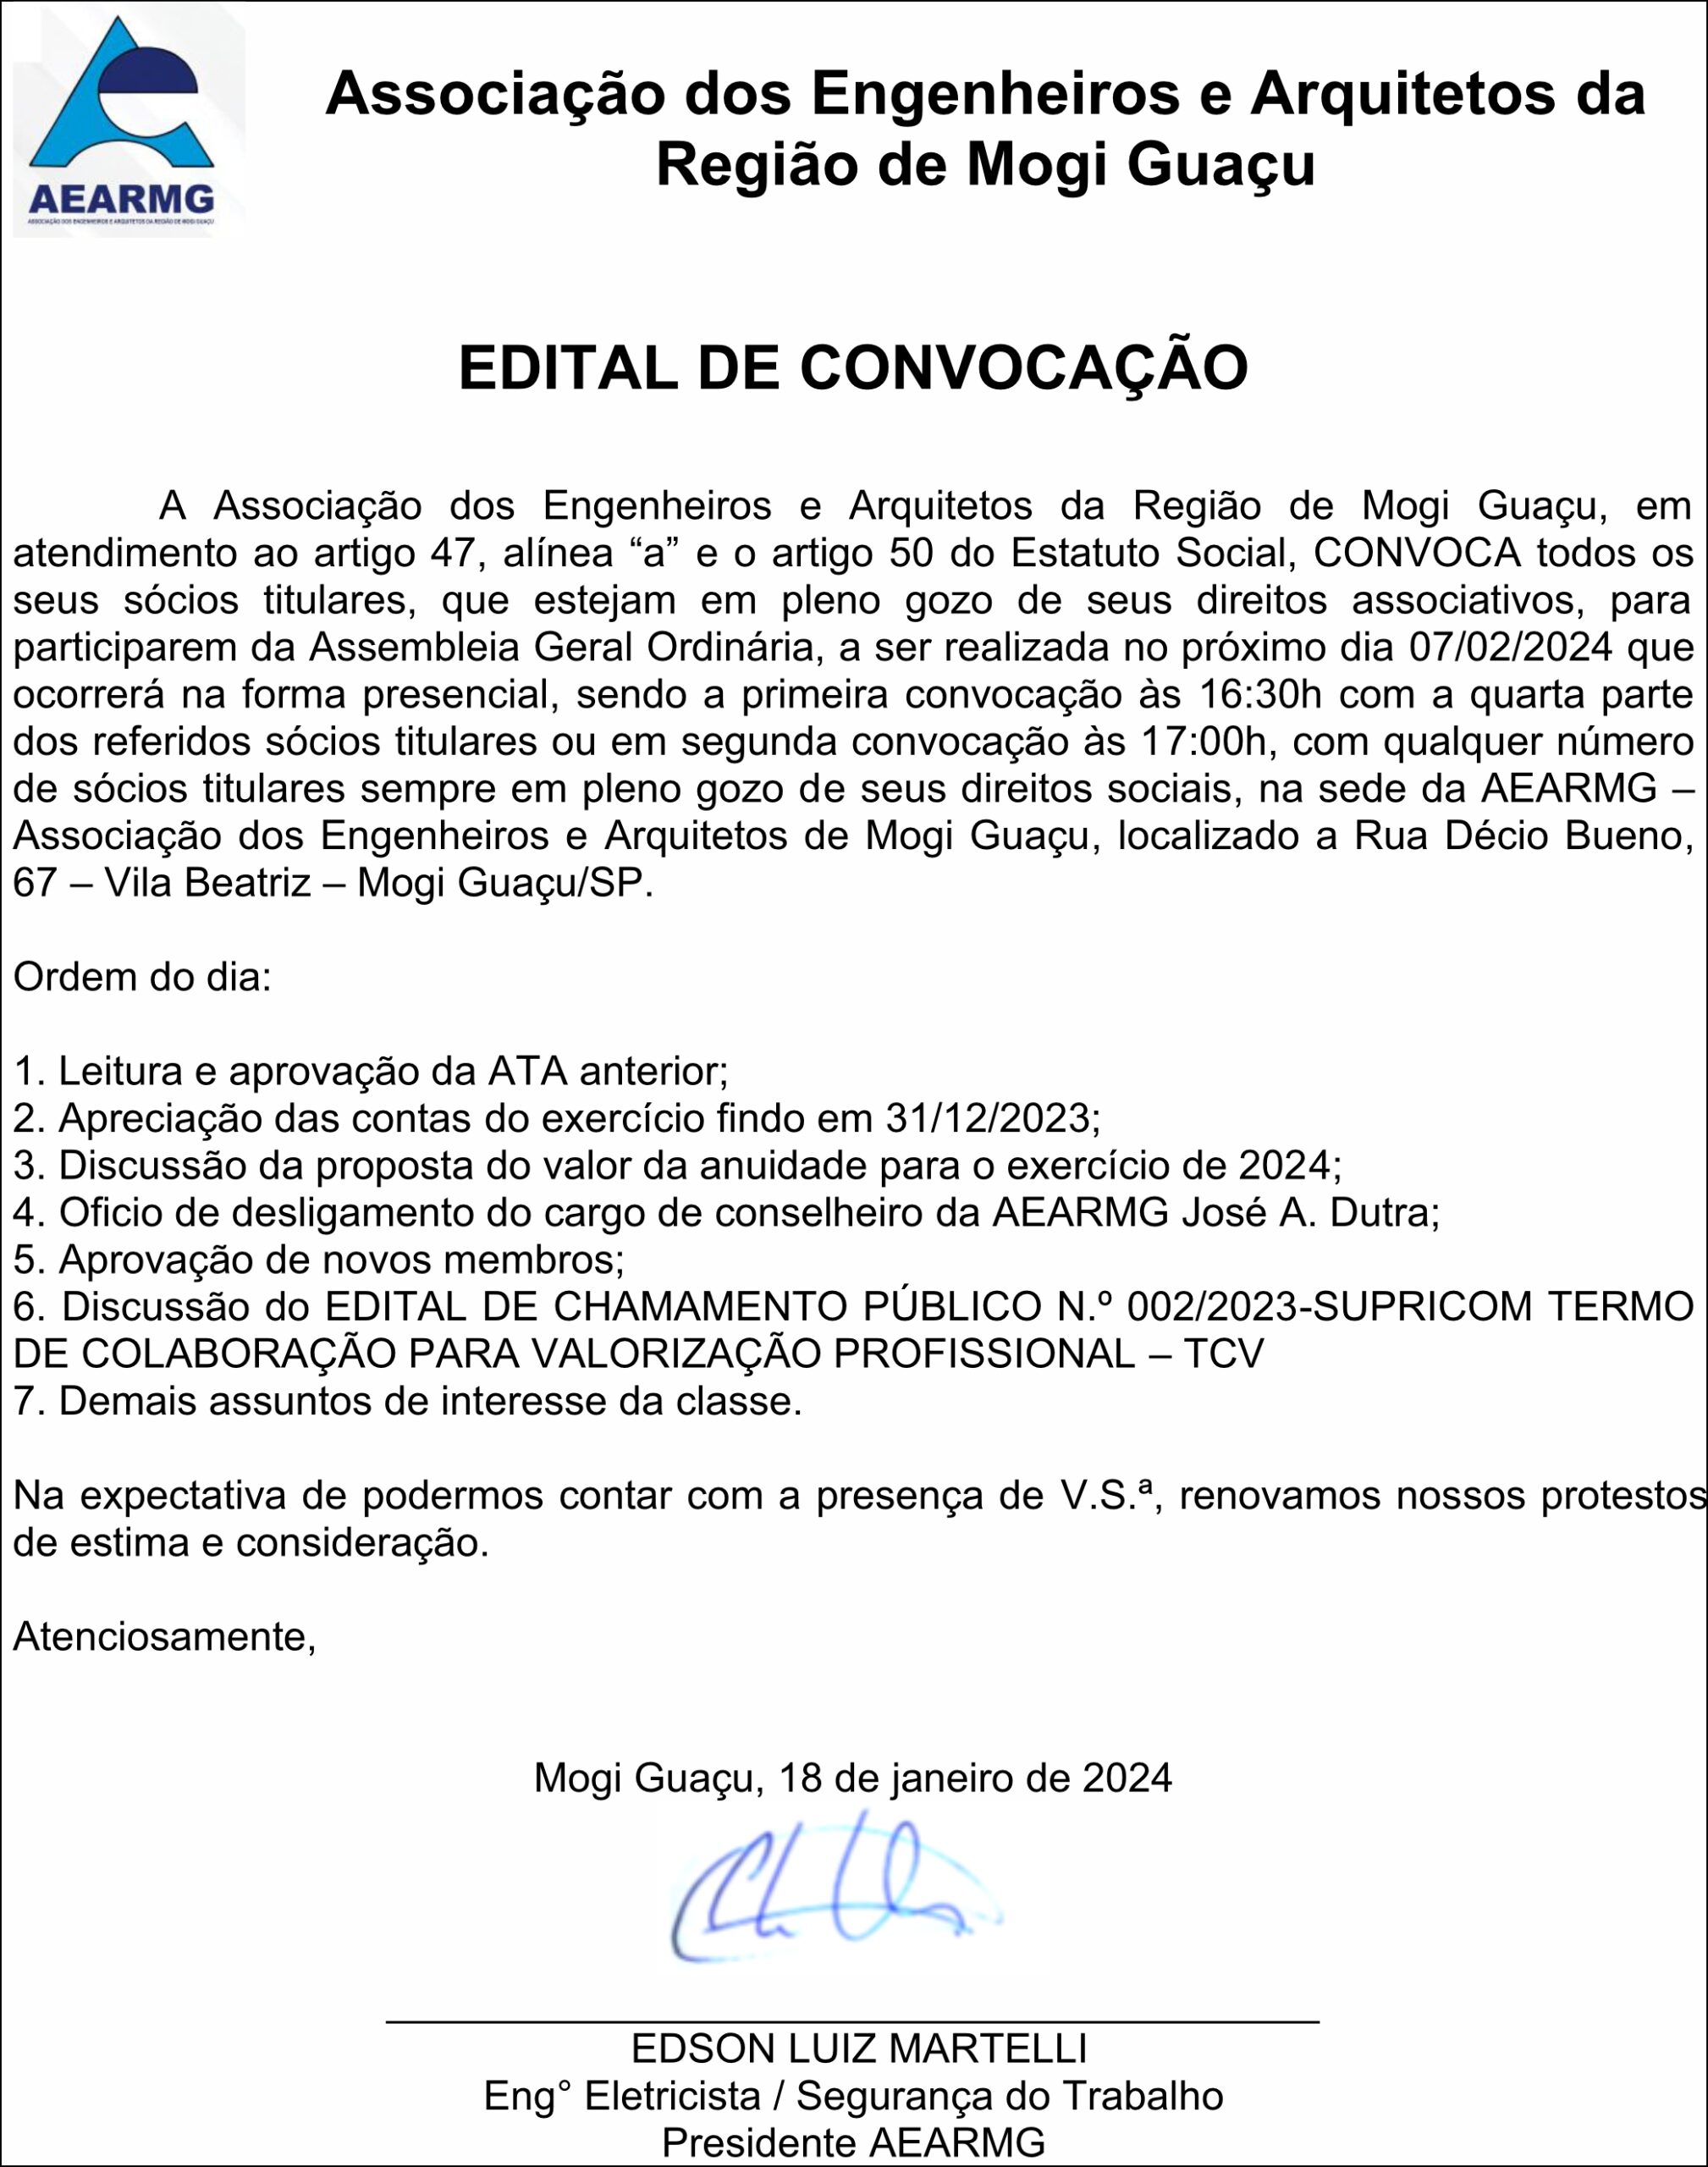 EDITAL DE CONVOCAÇÃO ASSEMBLÉIA ORDINÁRIA FEV. 2024